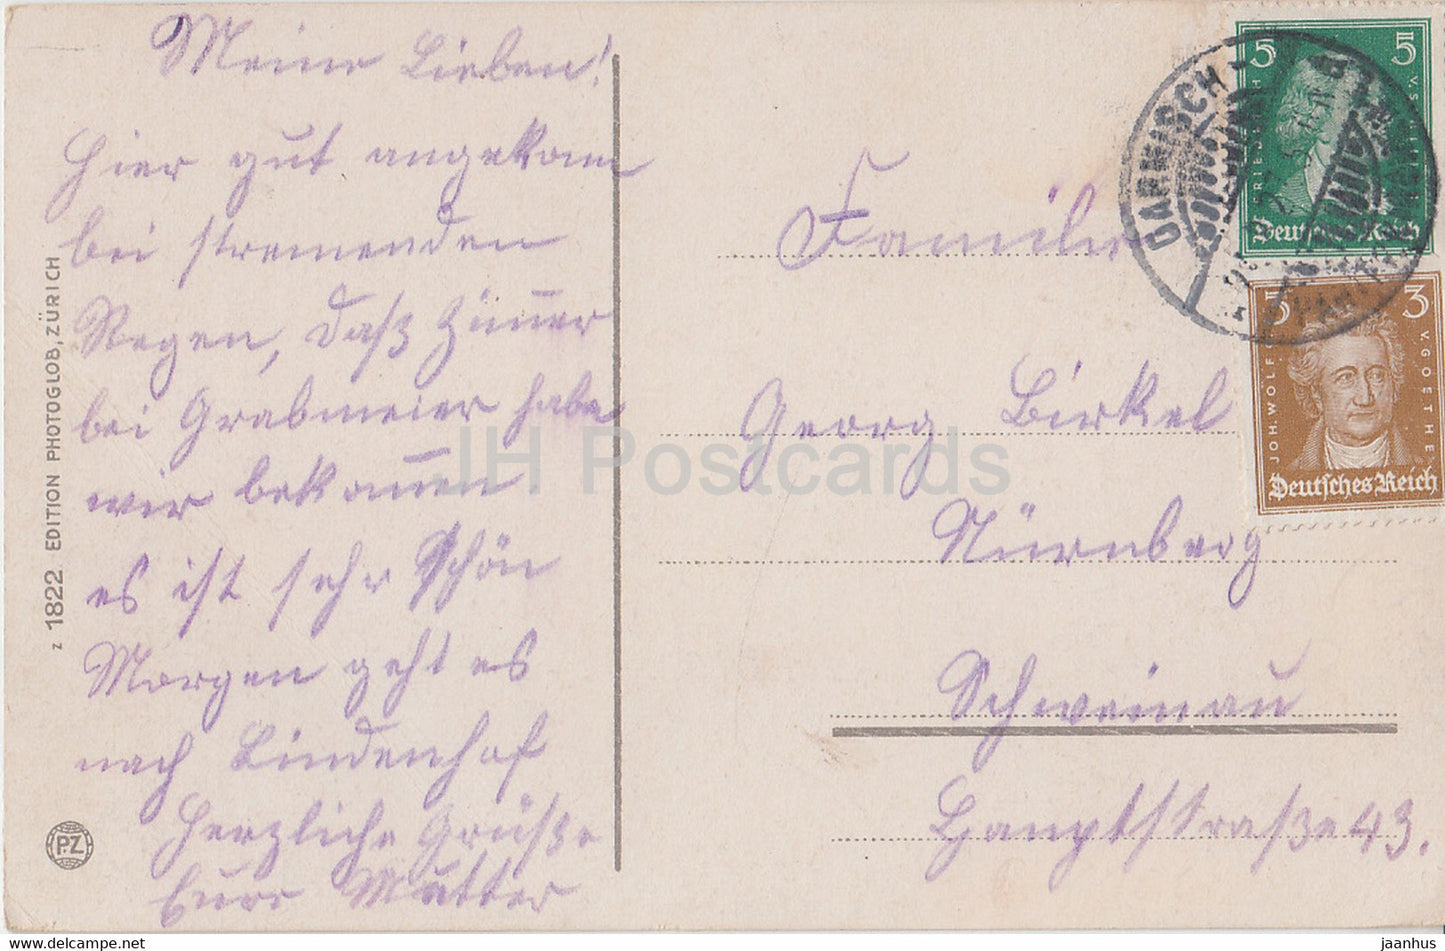 Partenkirchen mit Zugspitze - 1822 - alte Postkarte - Deutschland - gebraucht